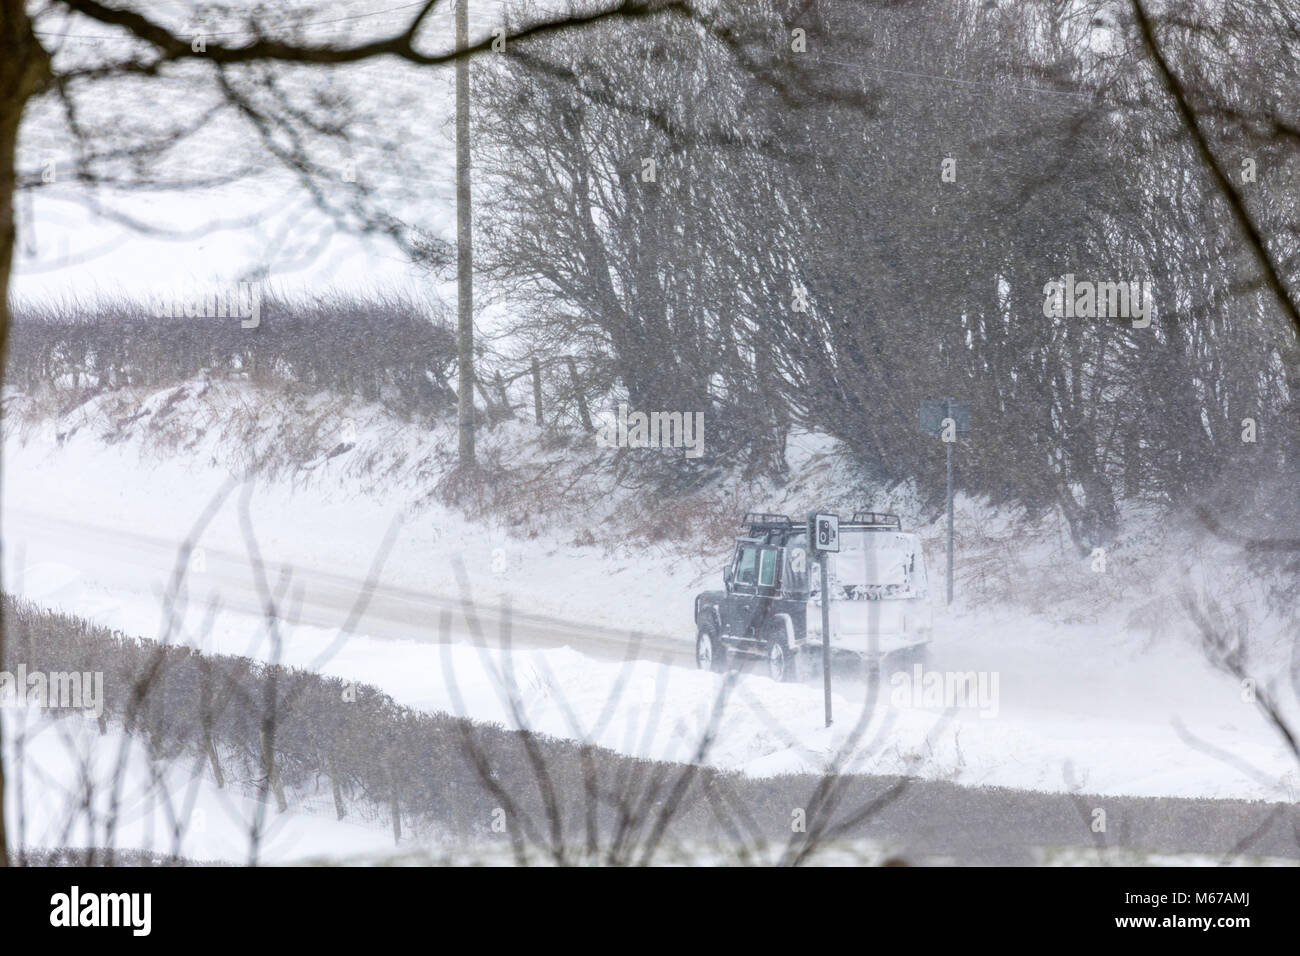 La tempête Emma et bête de la bête créé conditions routières dangereuses avec la neige du vent et de la neige soufflée dans le village rural de Bylchau dans Denbighshire coupés par les conditions météorologiques, au Pays de Galles, Royaume-Uni Banque D'Images